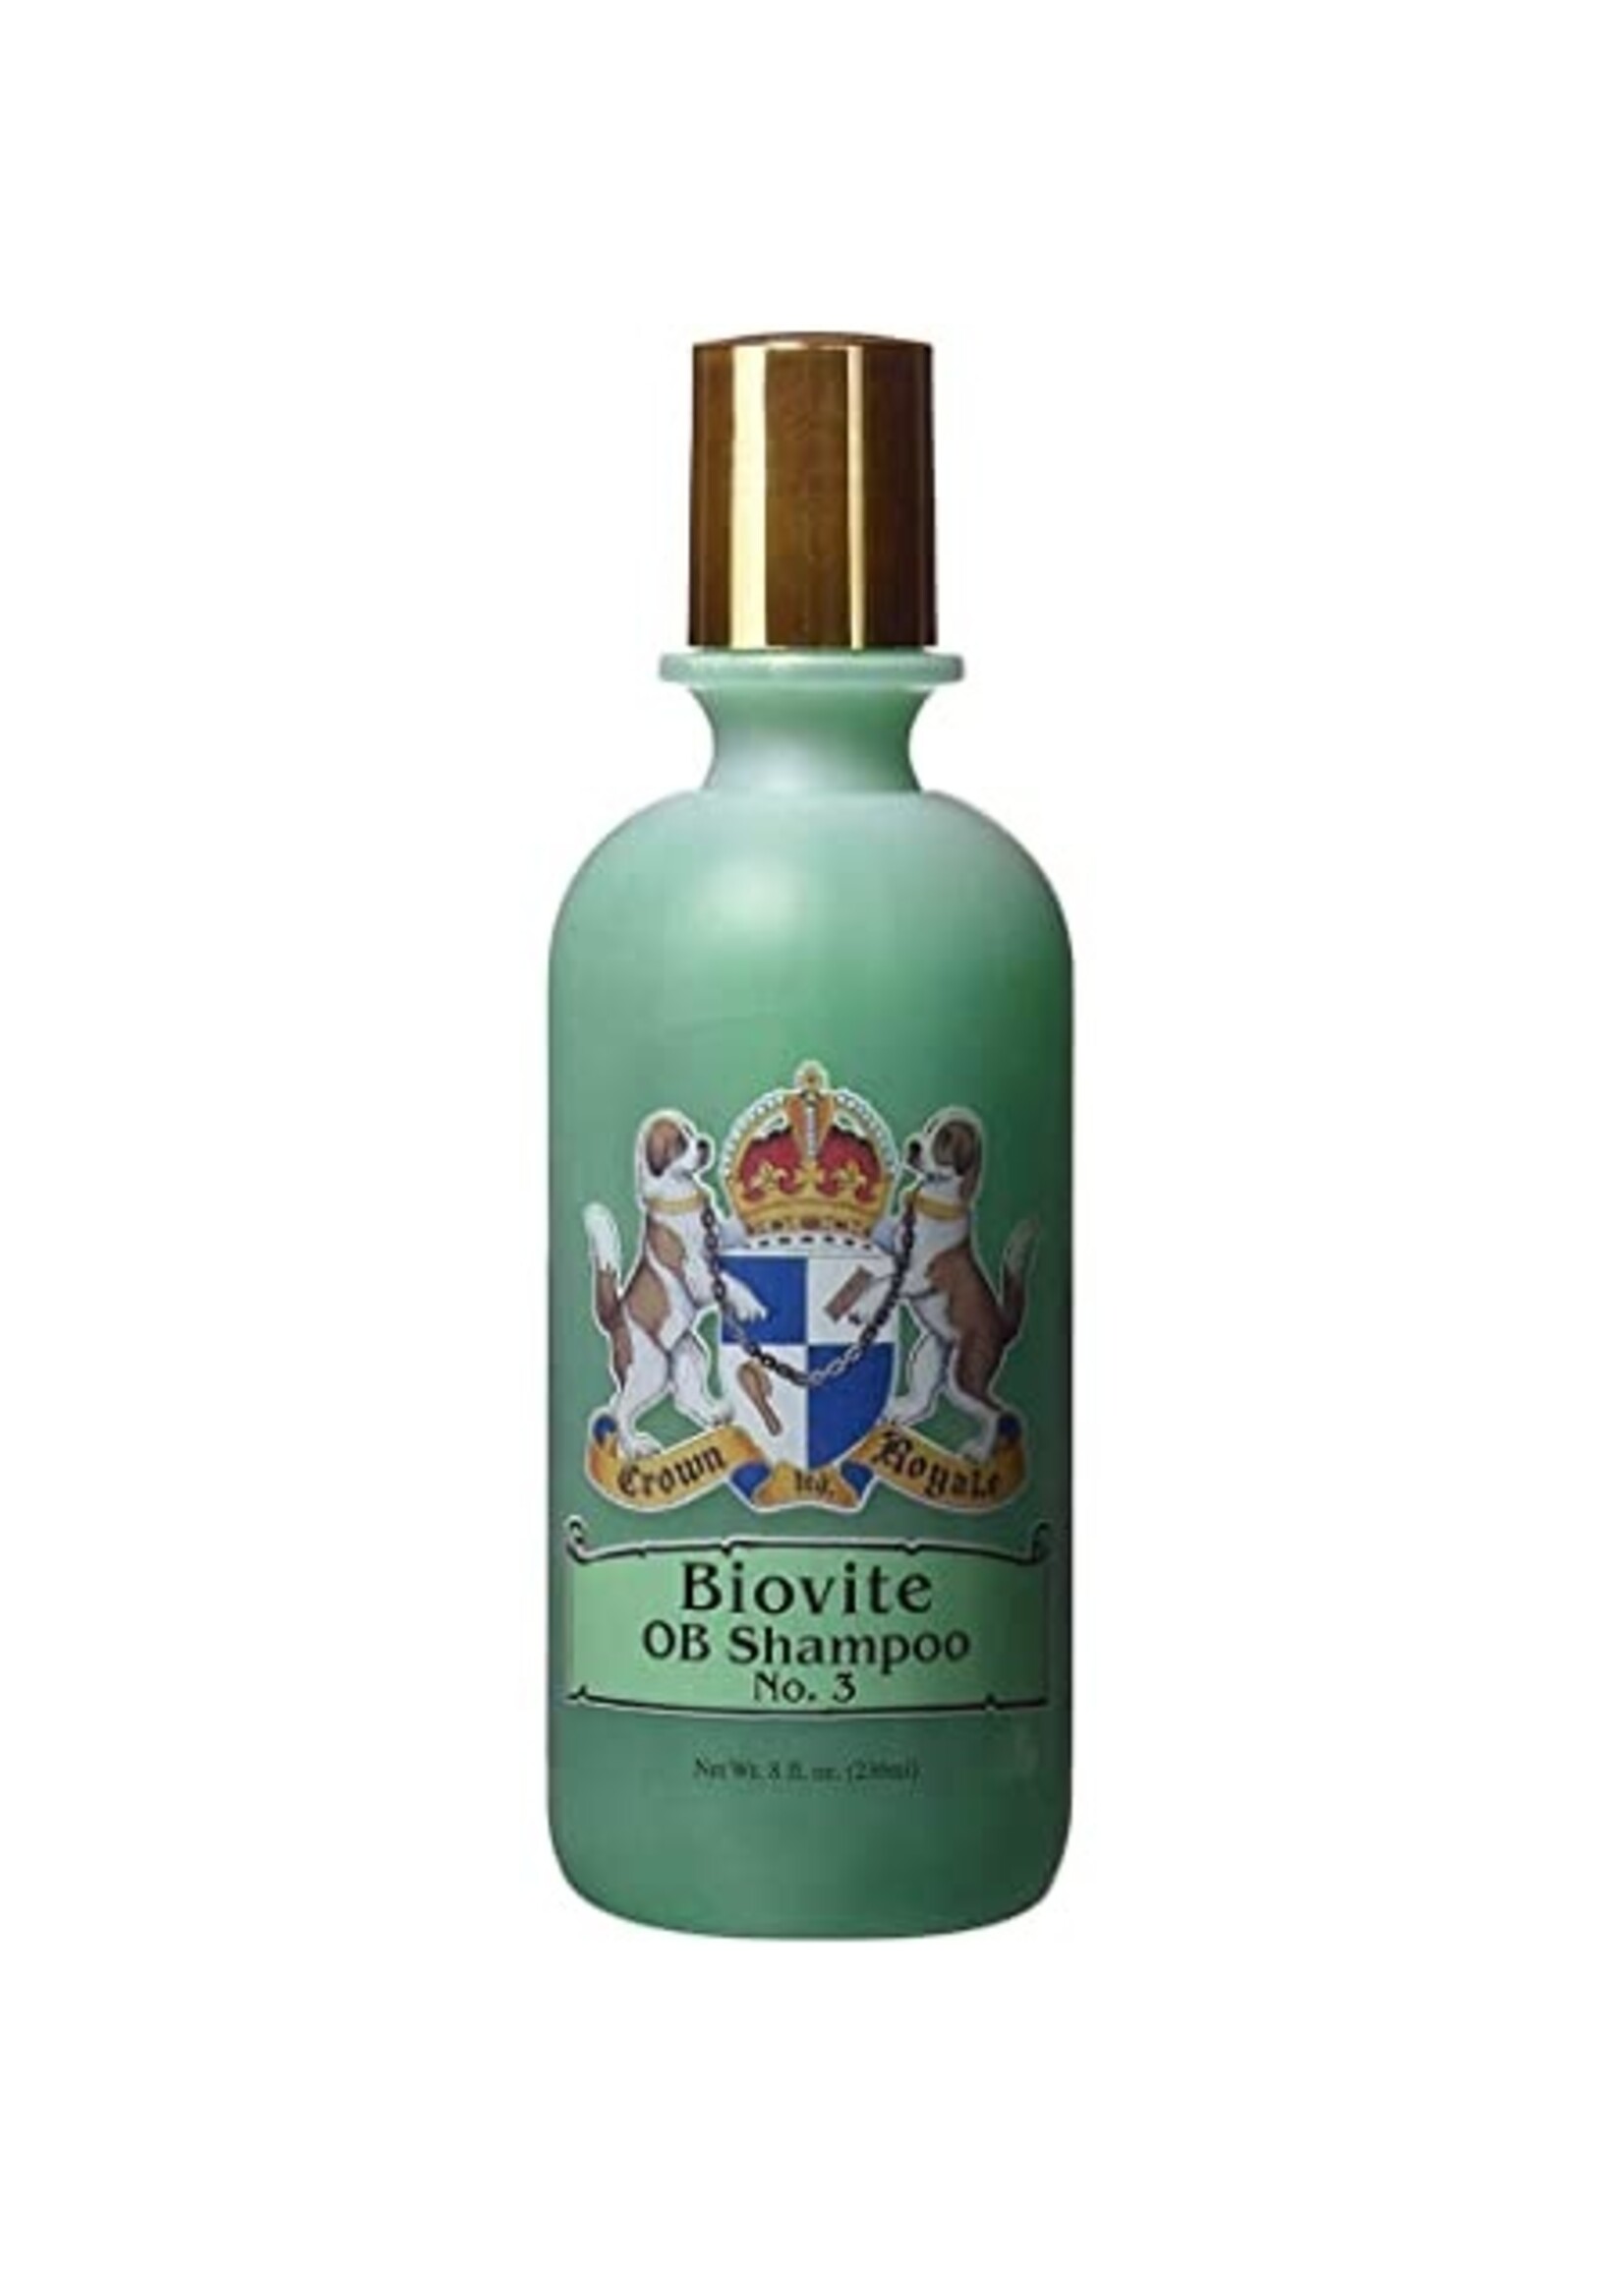 Crown Royale Crown Royale Biovite OB Shampoo No.3